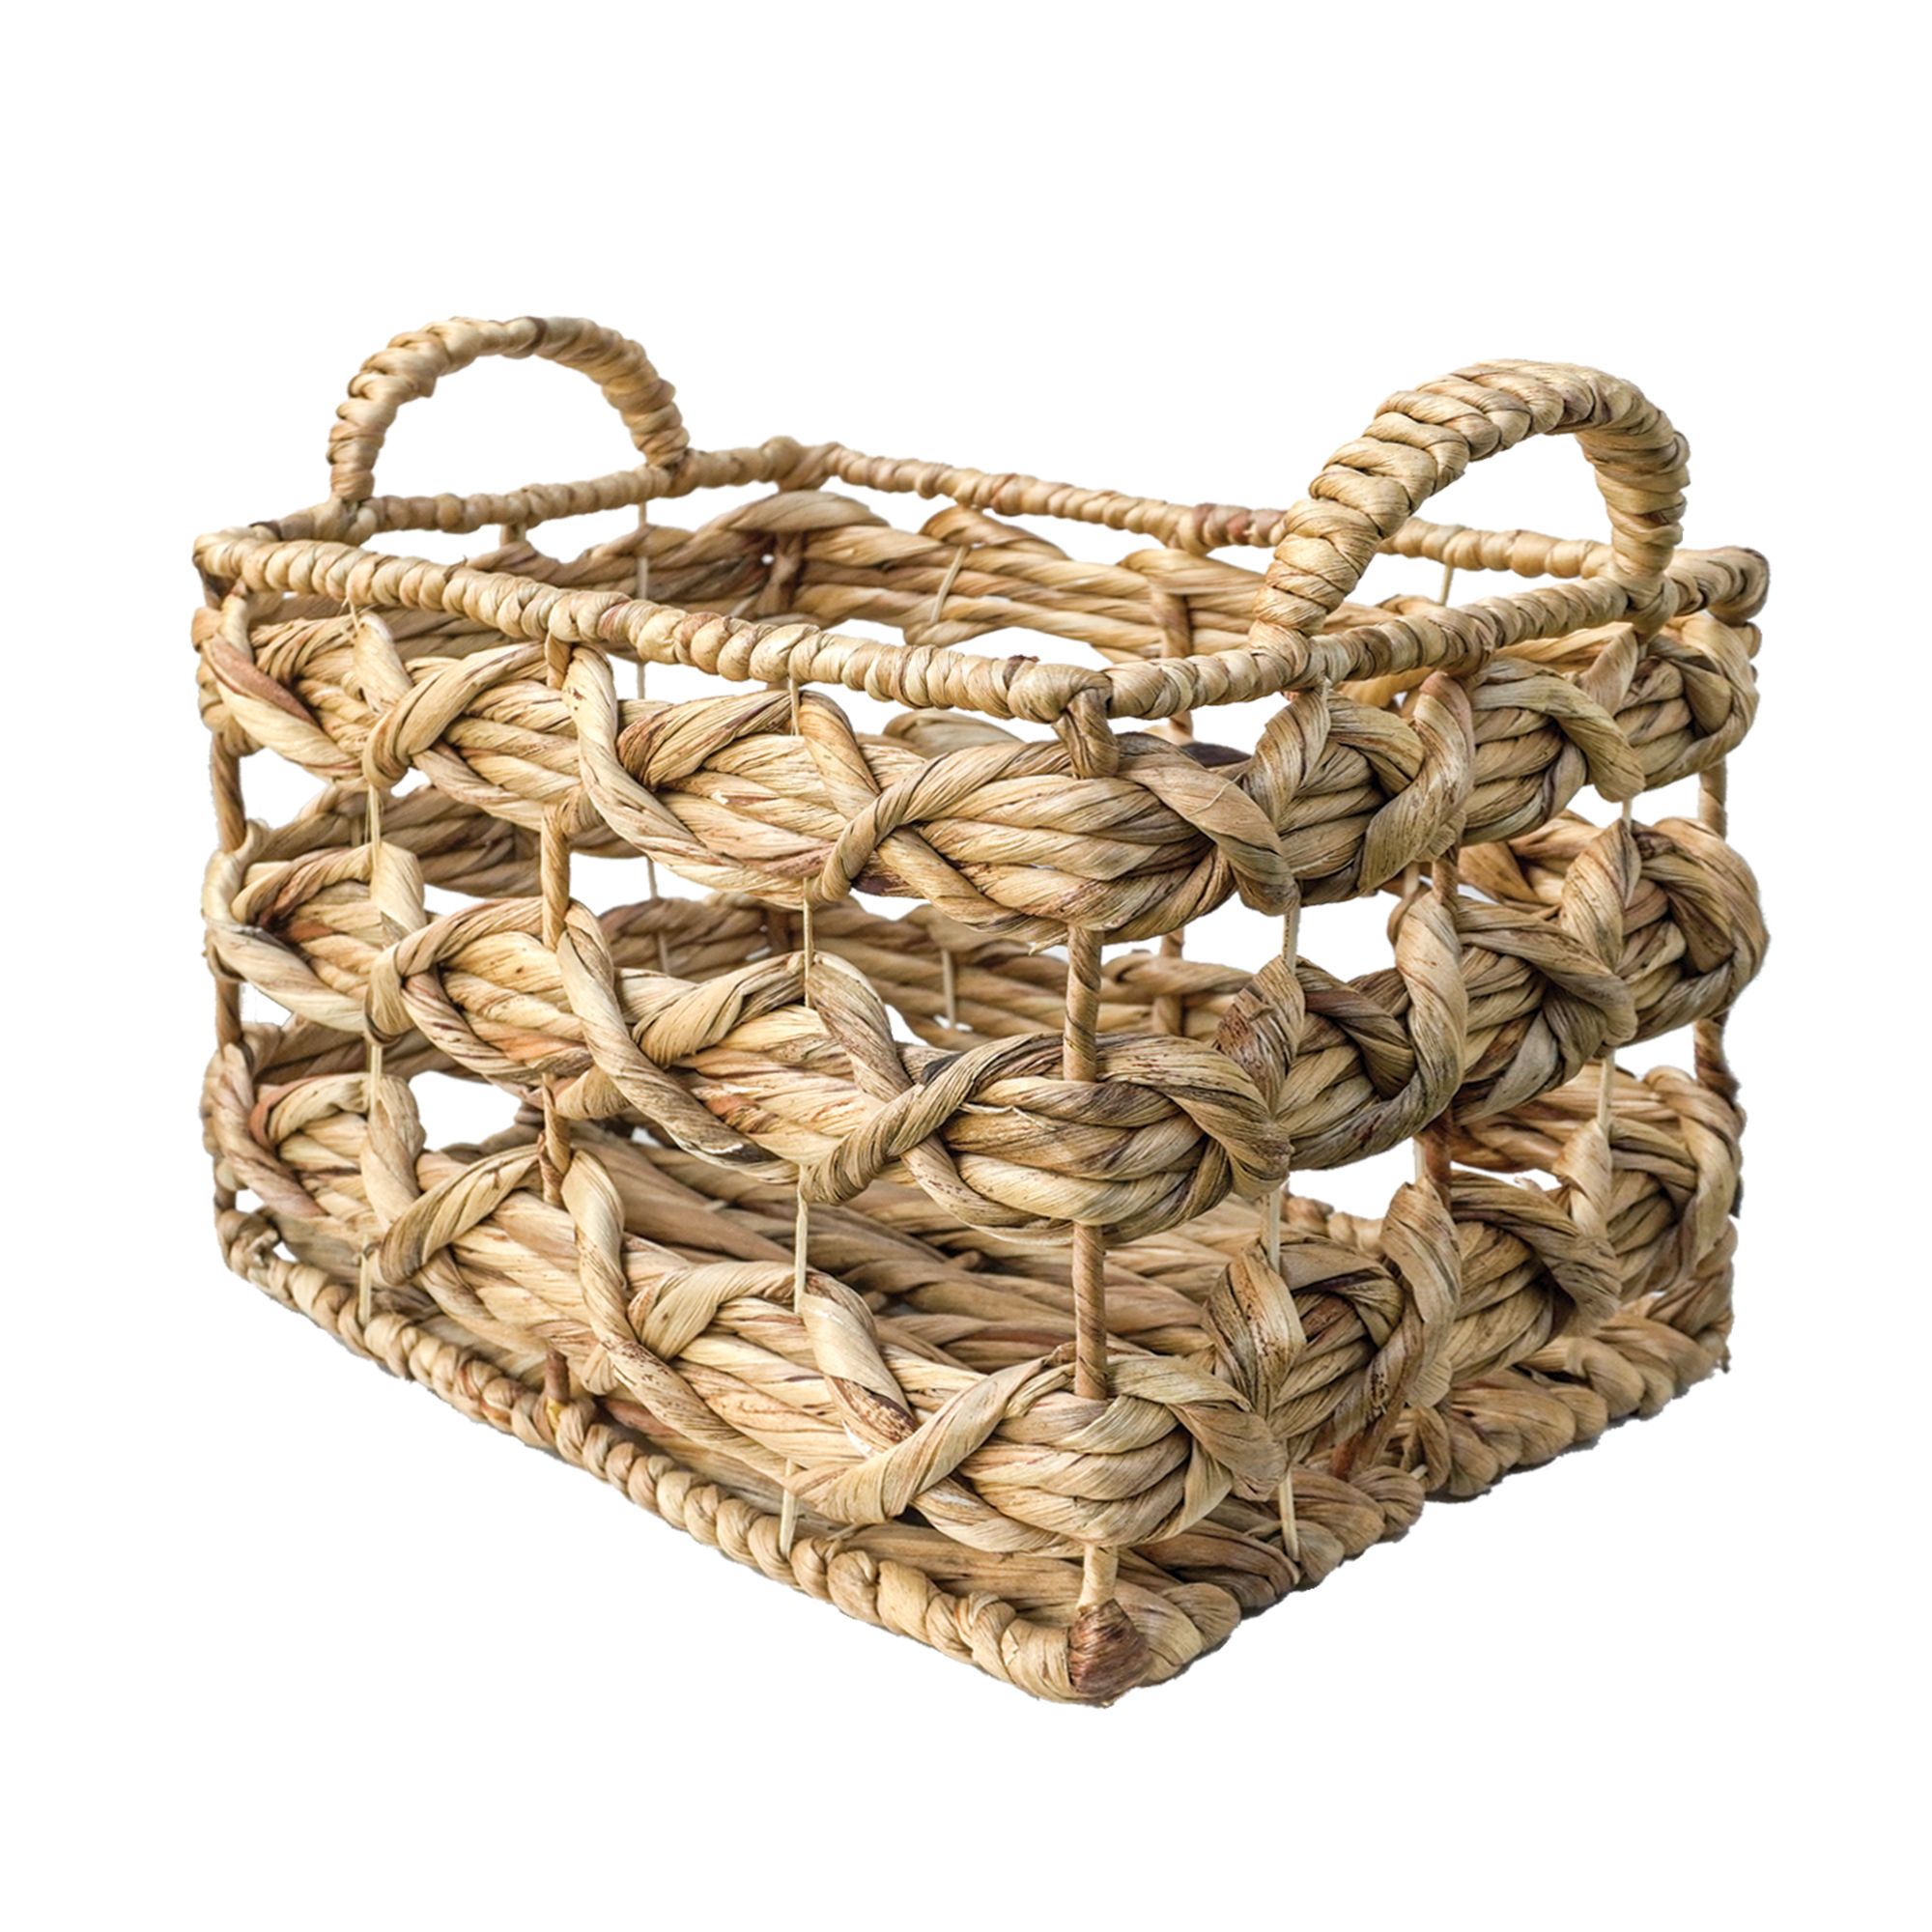  Rectangular basket 1 